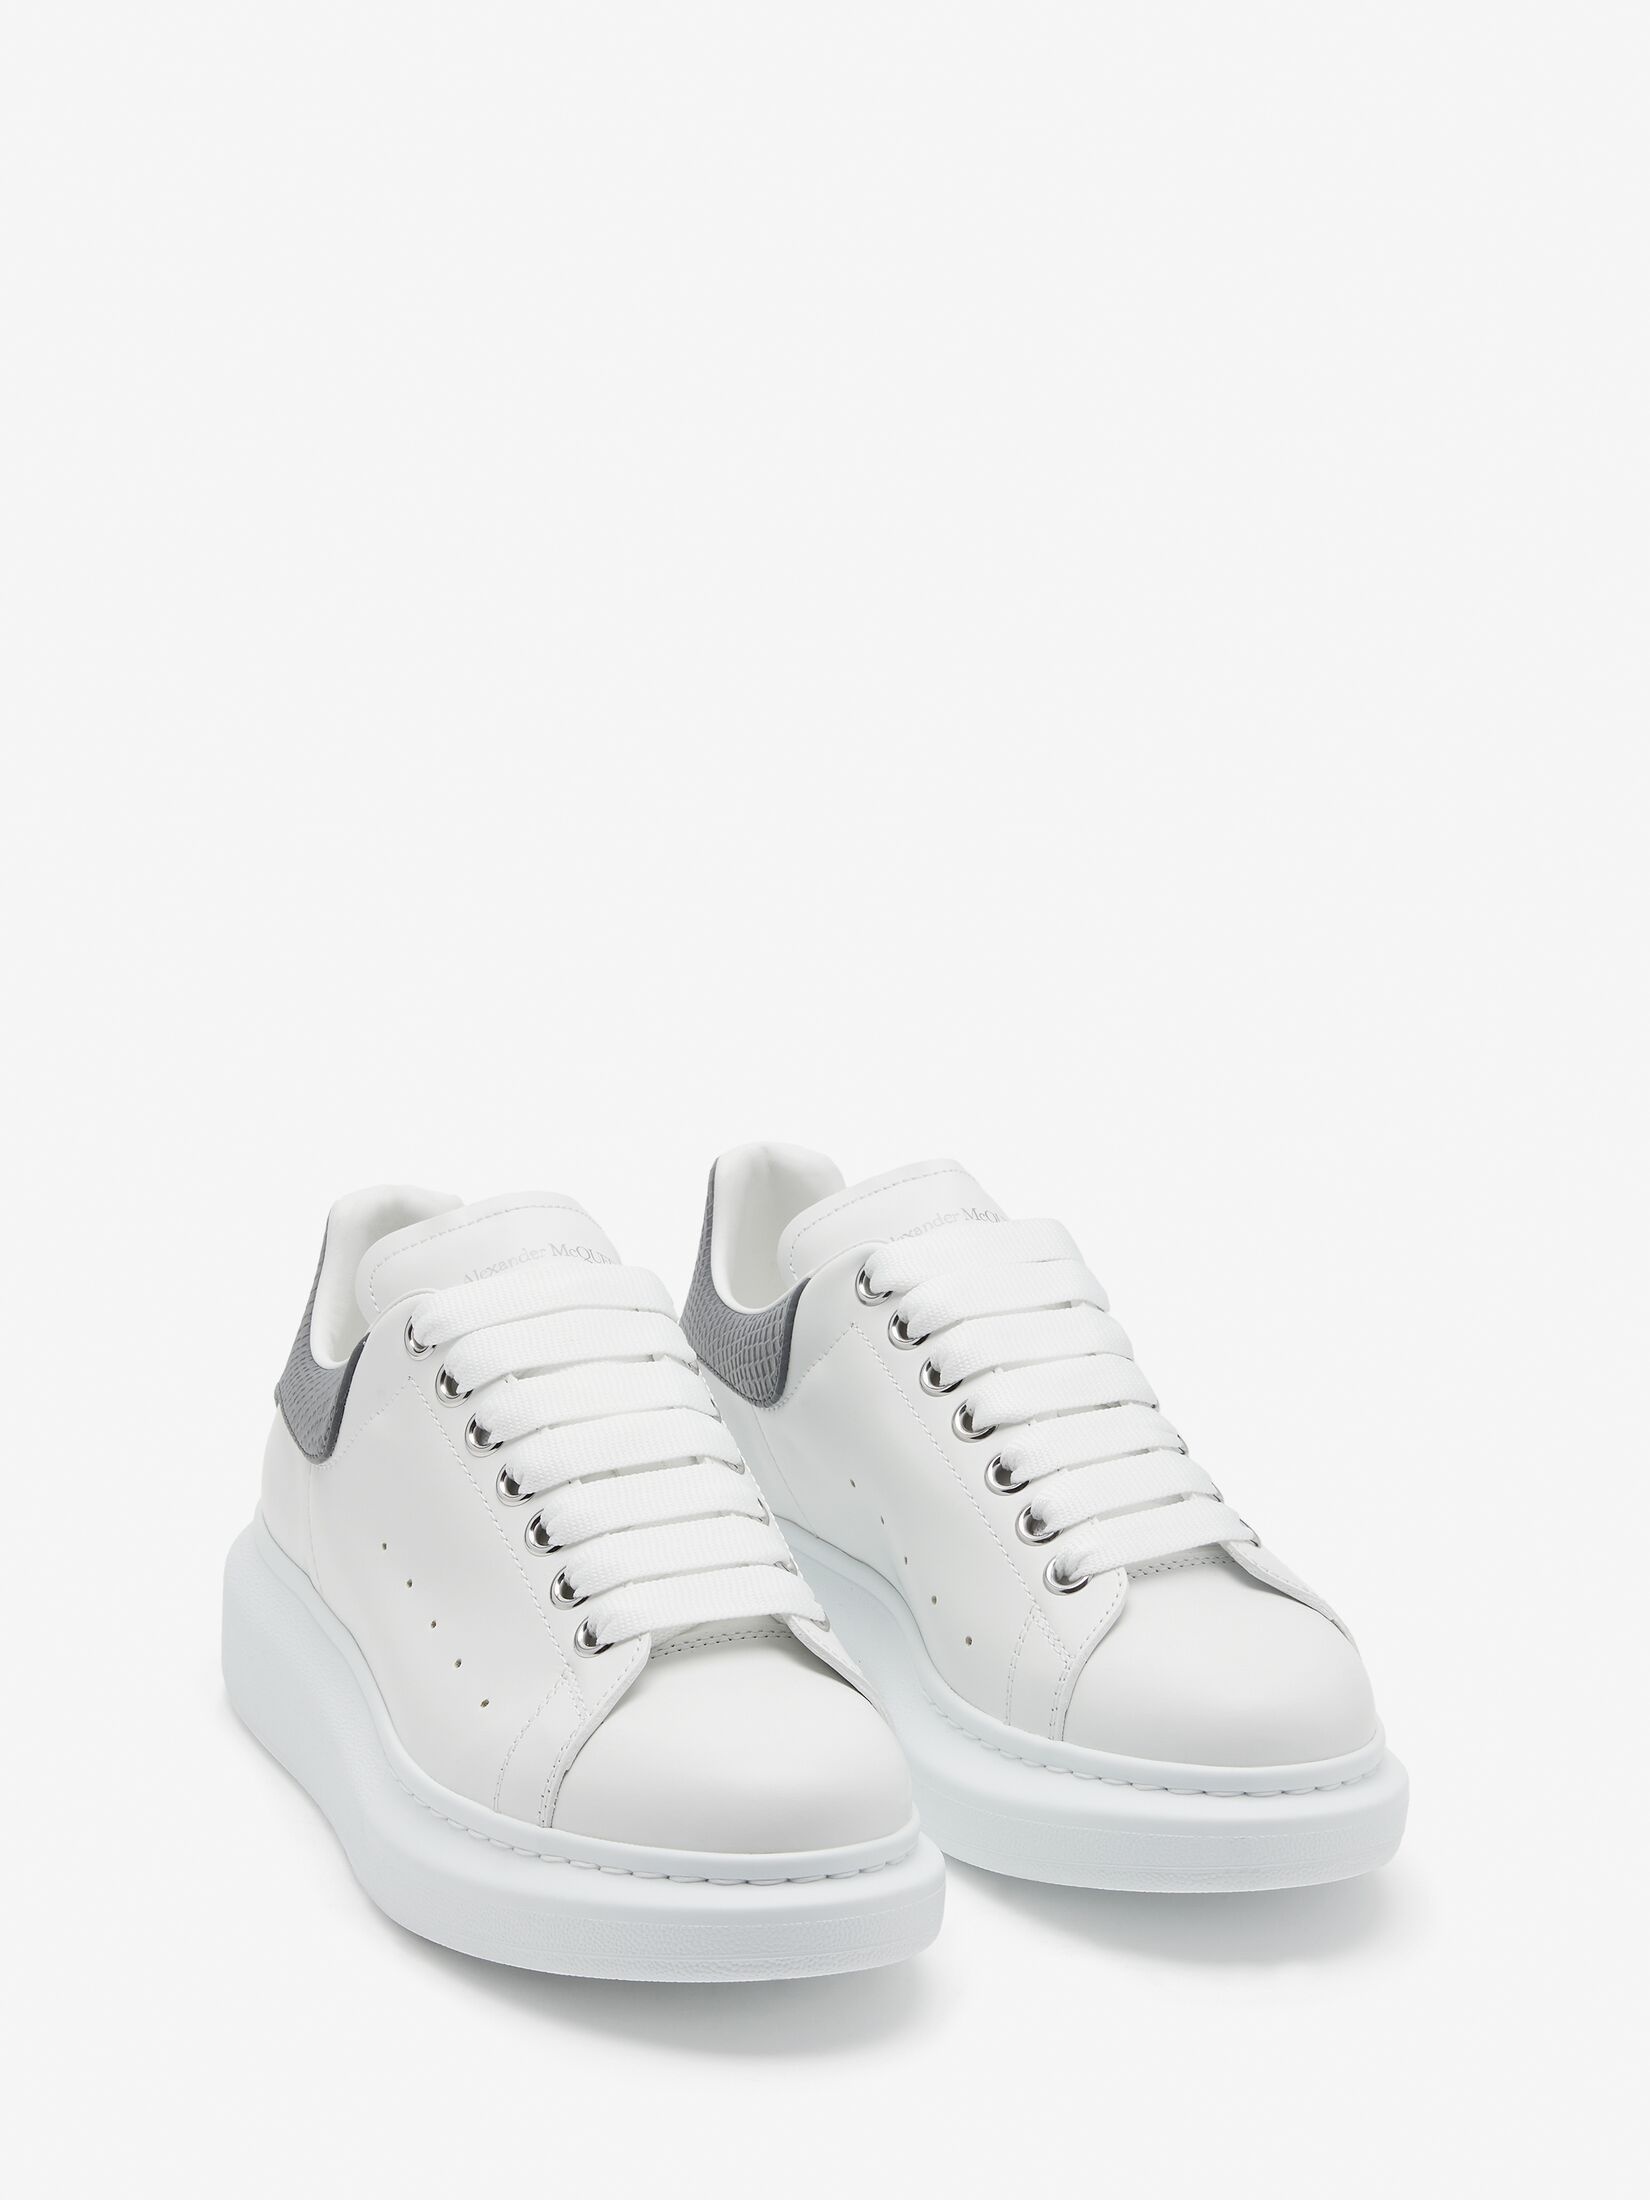 Women's Oversized Sneaker in White/grey - 2